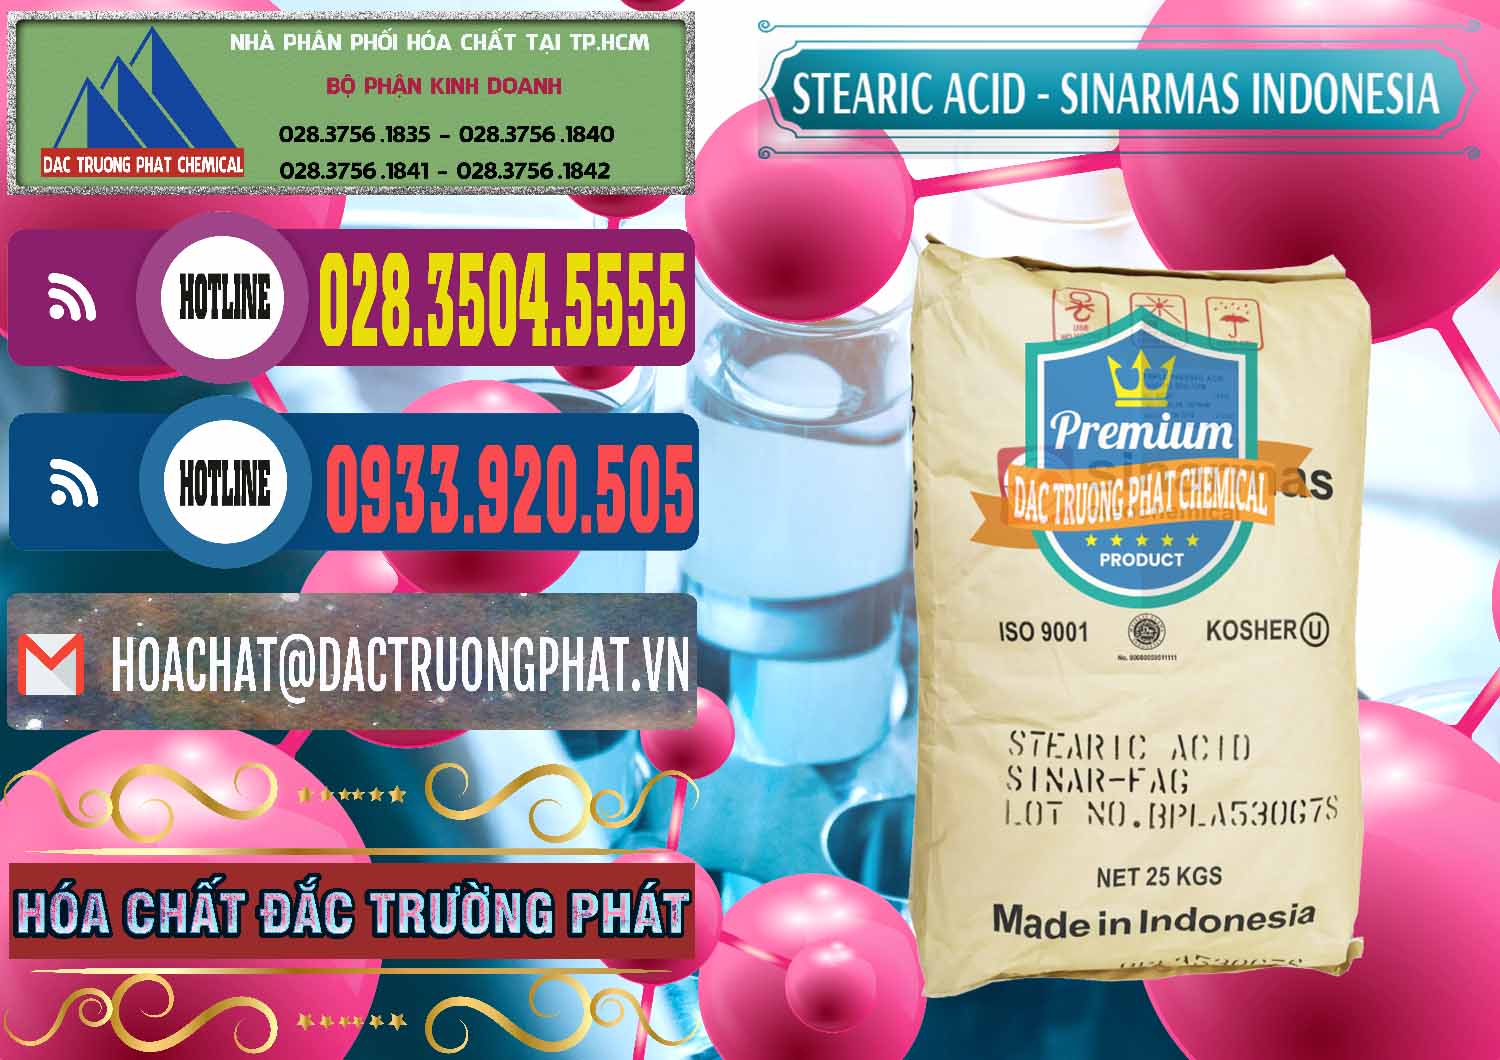 Nơi cung cấp ( bán ) Axit Stearic - Stearic Acid Sinarmas Indonesia - 0389 - Bán _ phân phối hóa chất tại TP.HCM - muabanhoachat.com.vn